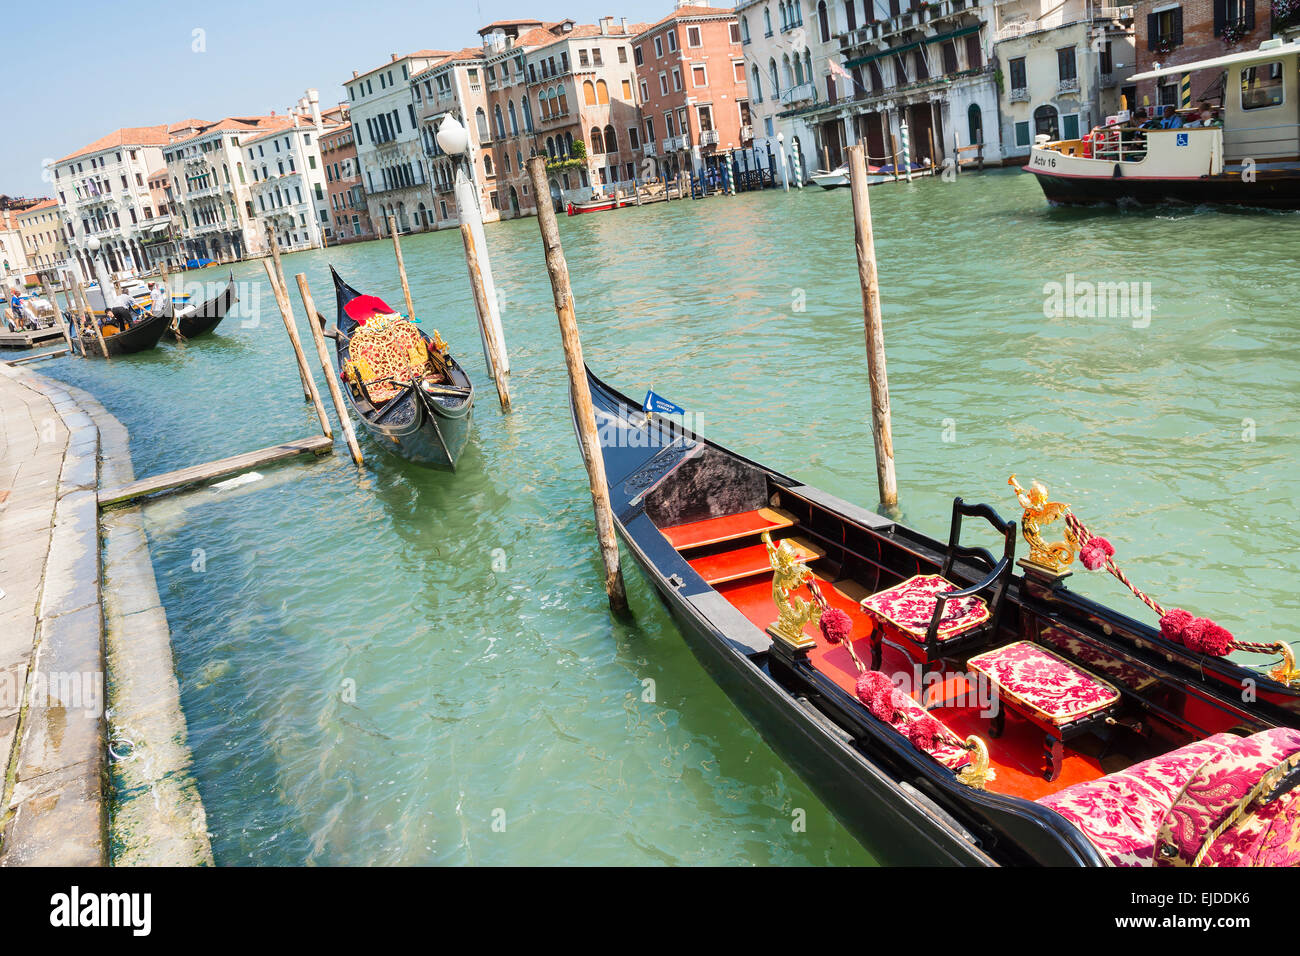 Italy-August:12,2014,Venise gondole vénitienne traditionnelle certains attendent les touristes à transporter sur une gondole à Venise lors d'un soleil Banque D'Images